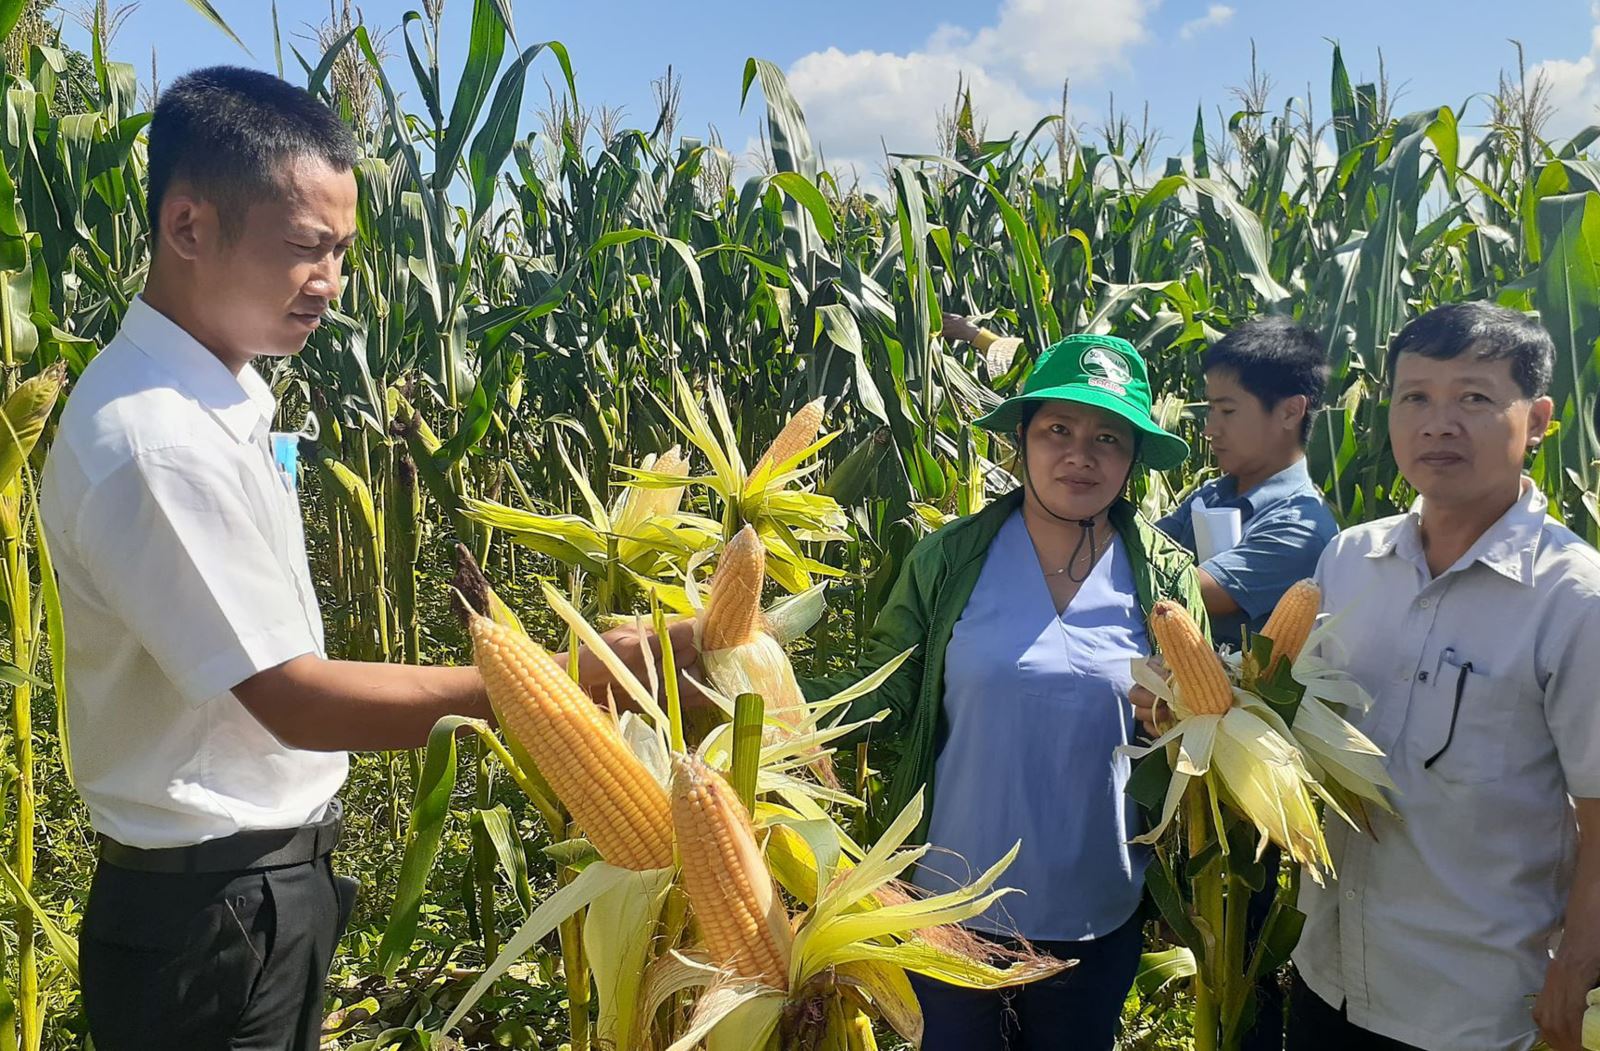 Doanh nghiệp cần hàng triệu tấn thức ăn chăn nuôi, tỉnh Gia Lai tổ chức mời gọi đầu tư vùng nguyên liệu - Ảnh 2.